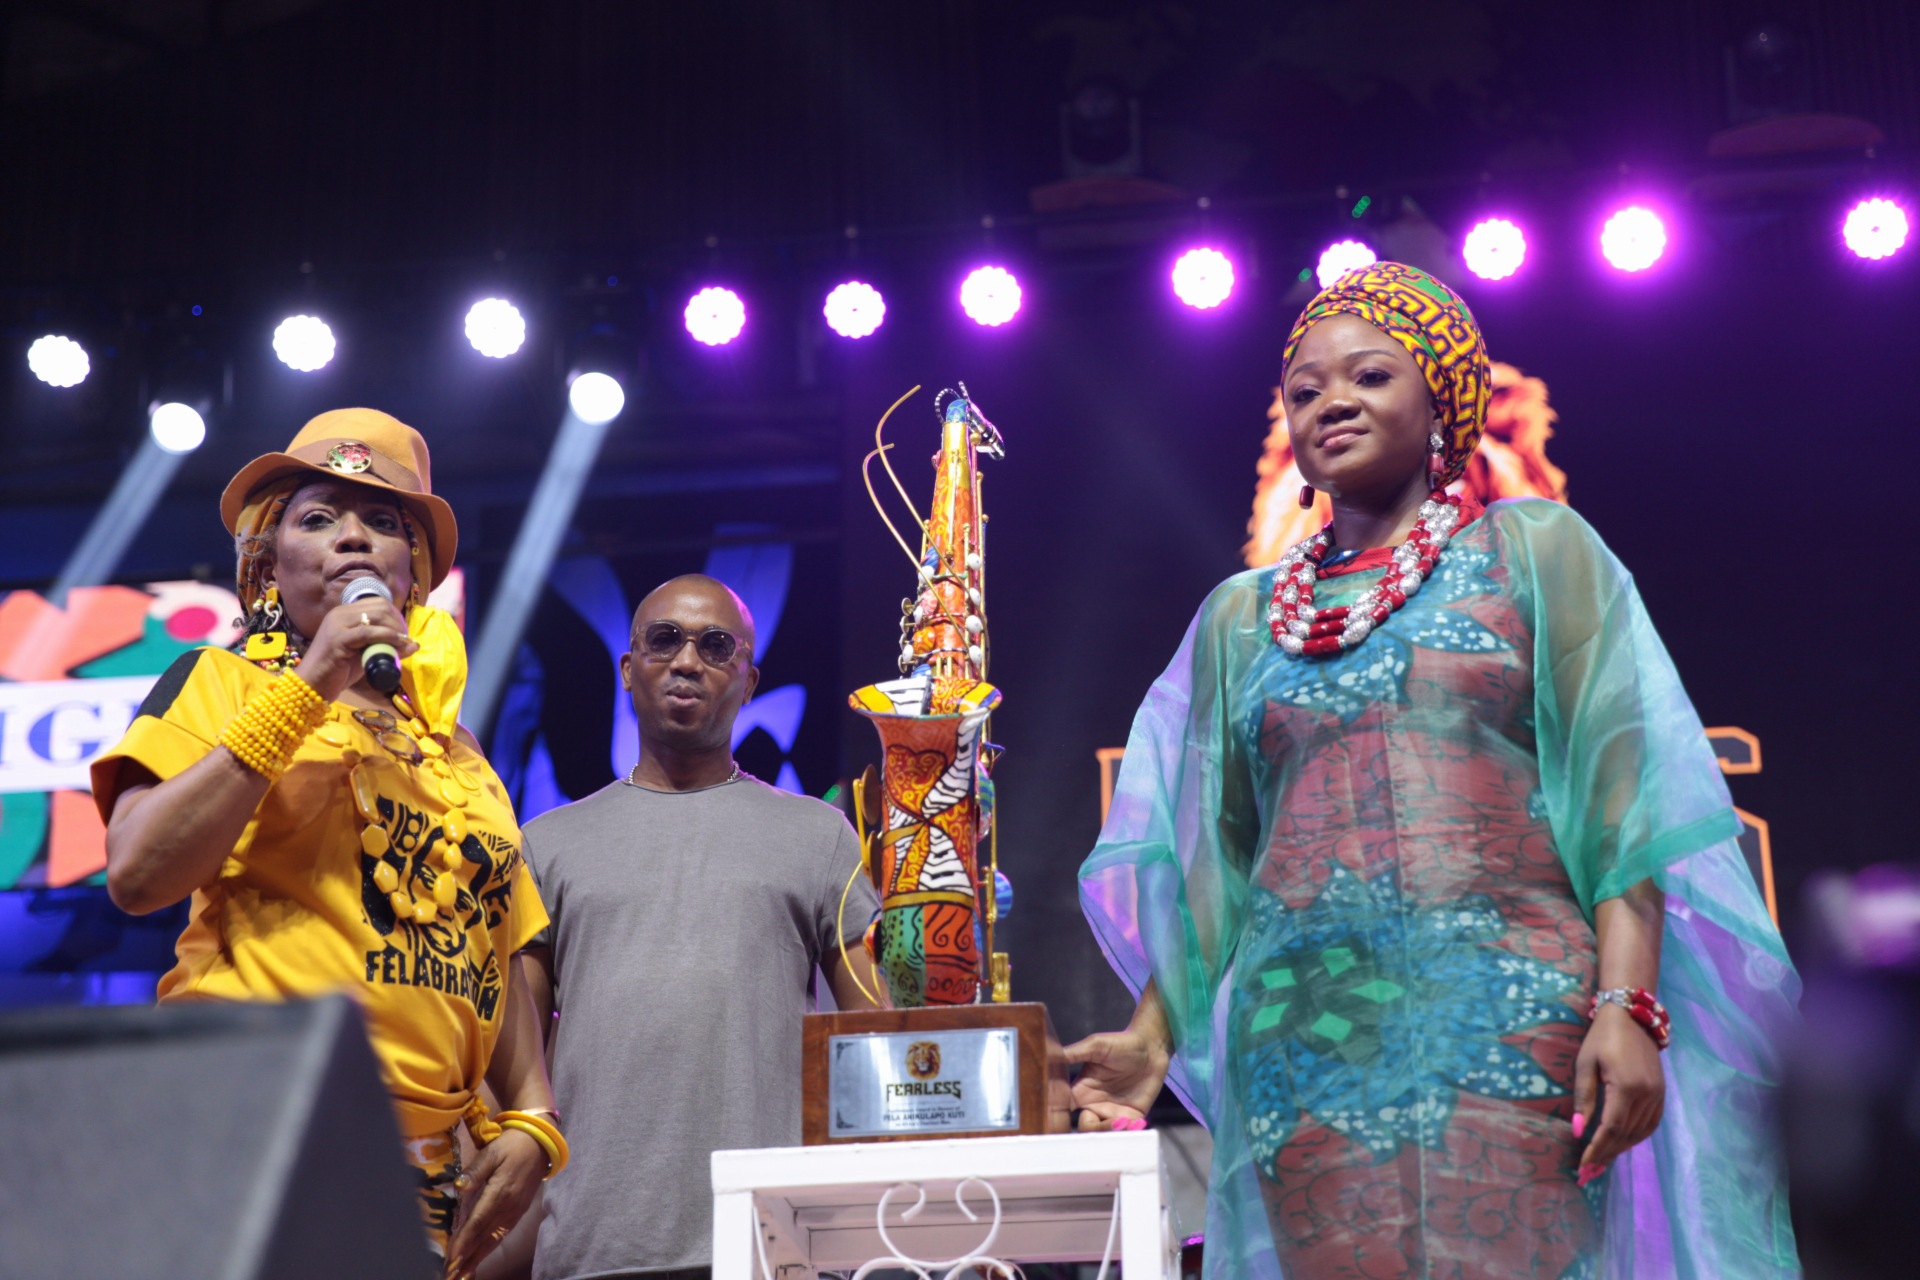 Yeni Kuti at the Grand Finale of Felabration 2021 at the New Afrika Shrine, Lagos. Photo by Ayodele Efunla